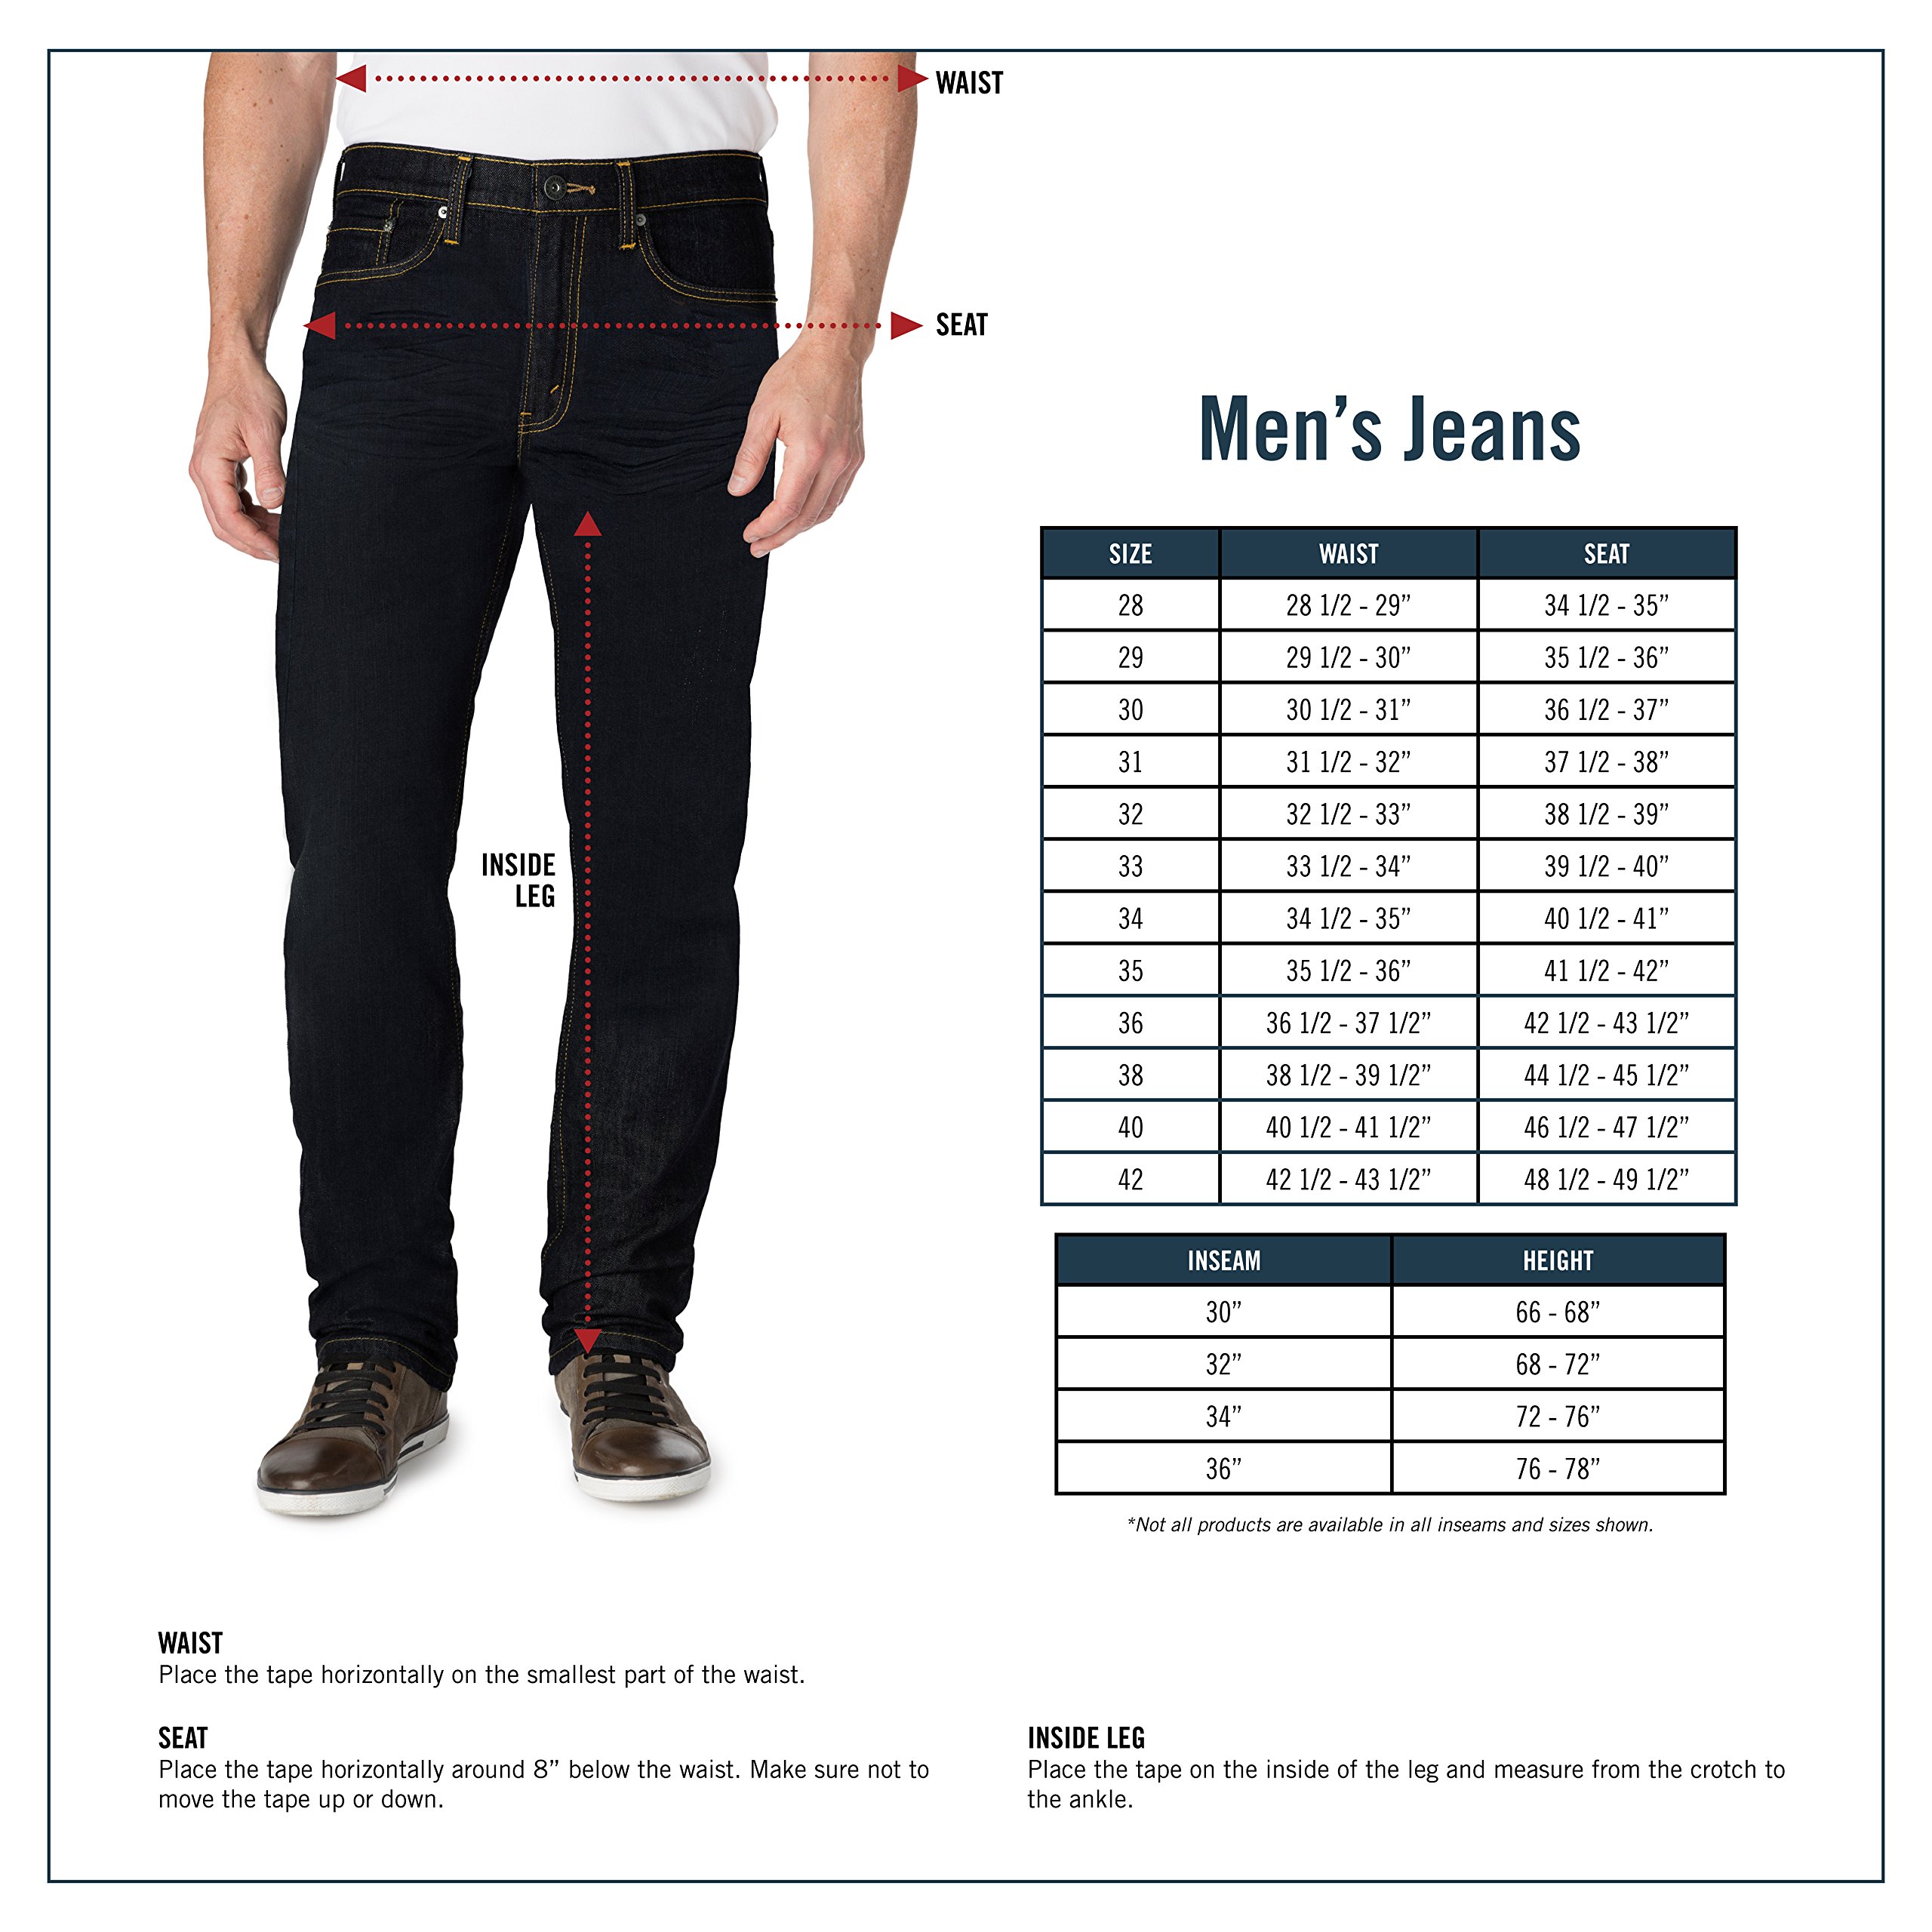 джинсовые размеры мужские таблица